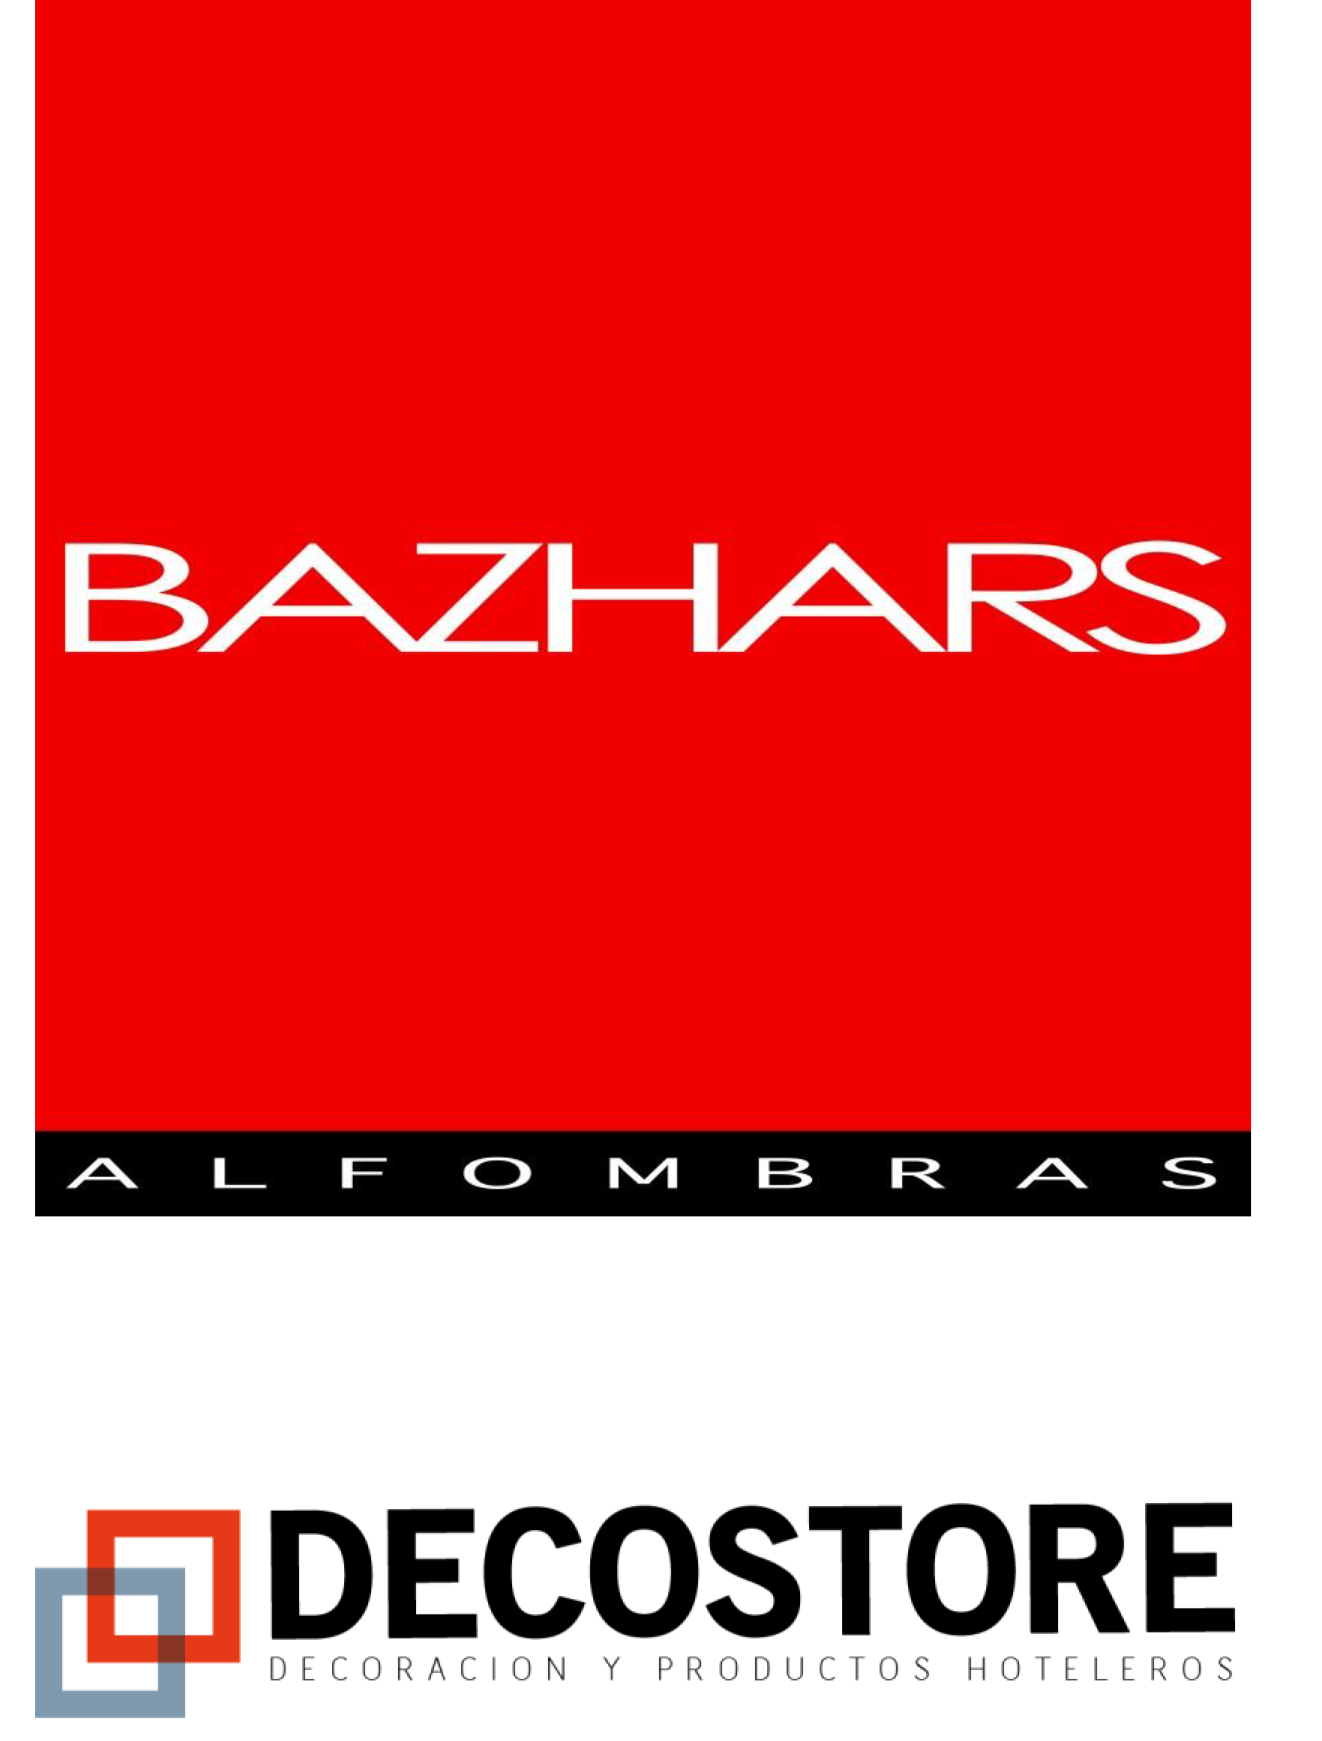 BAZHARS Alfombras